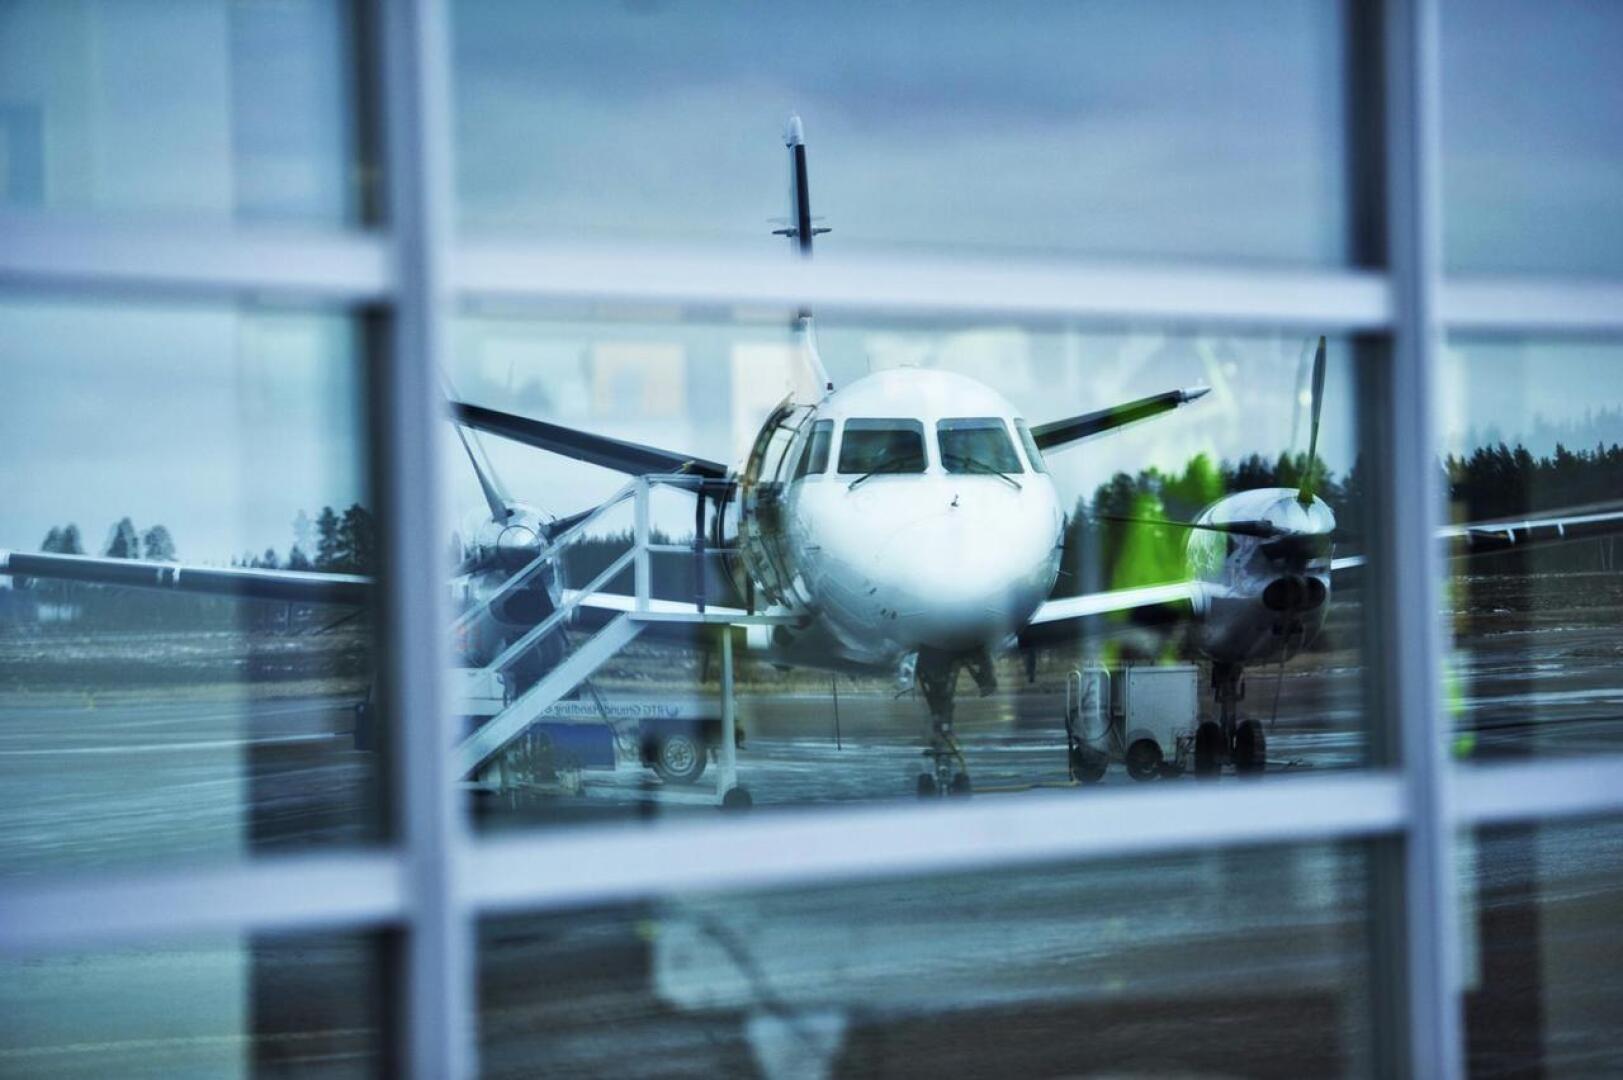 Aiemmin Tukholmaan lentävän Nextjetin konkurssi ehti vaikuttaa paikallisiin yrittäjiin lähinnä henkisellä puolella, sillä konkurssipesän ostaja Olsen Gruppen AS suunnittelee lentojen aloittamista Tukholmaan jo heinäkuussa.